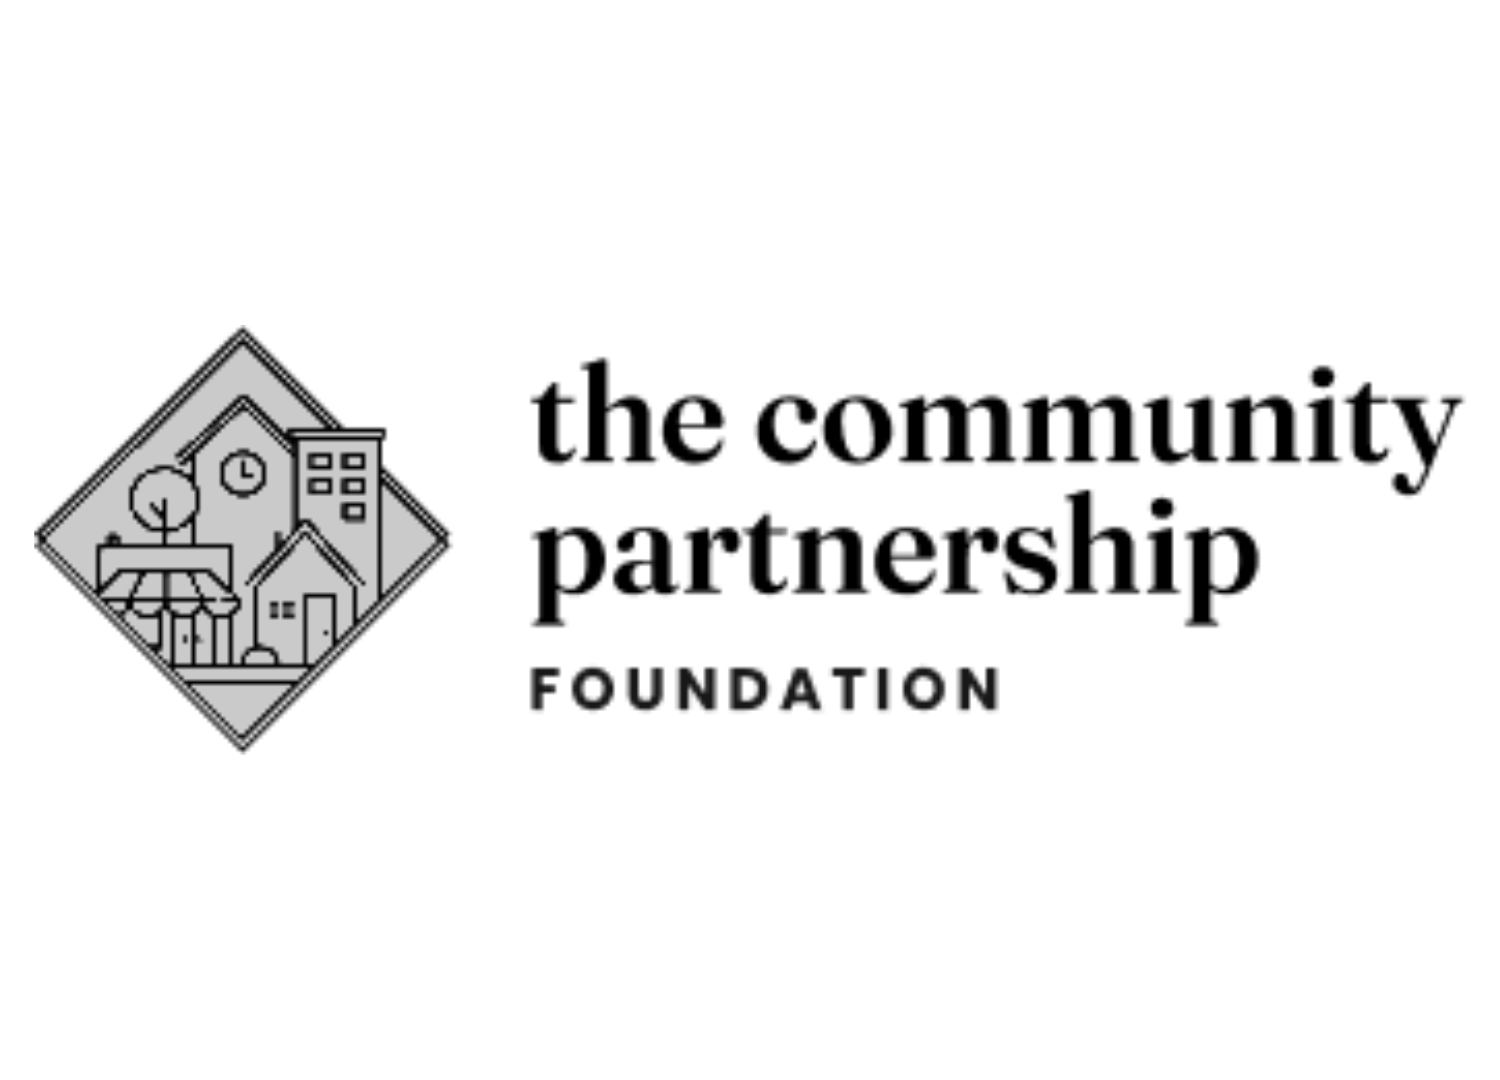 The Community Partnership Foundation Logo